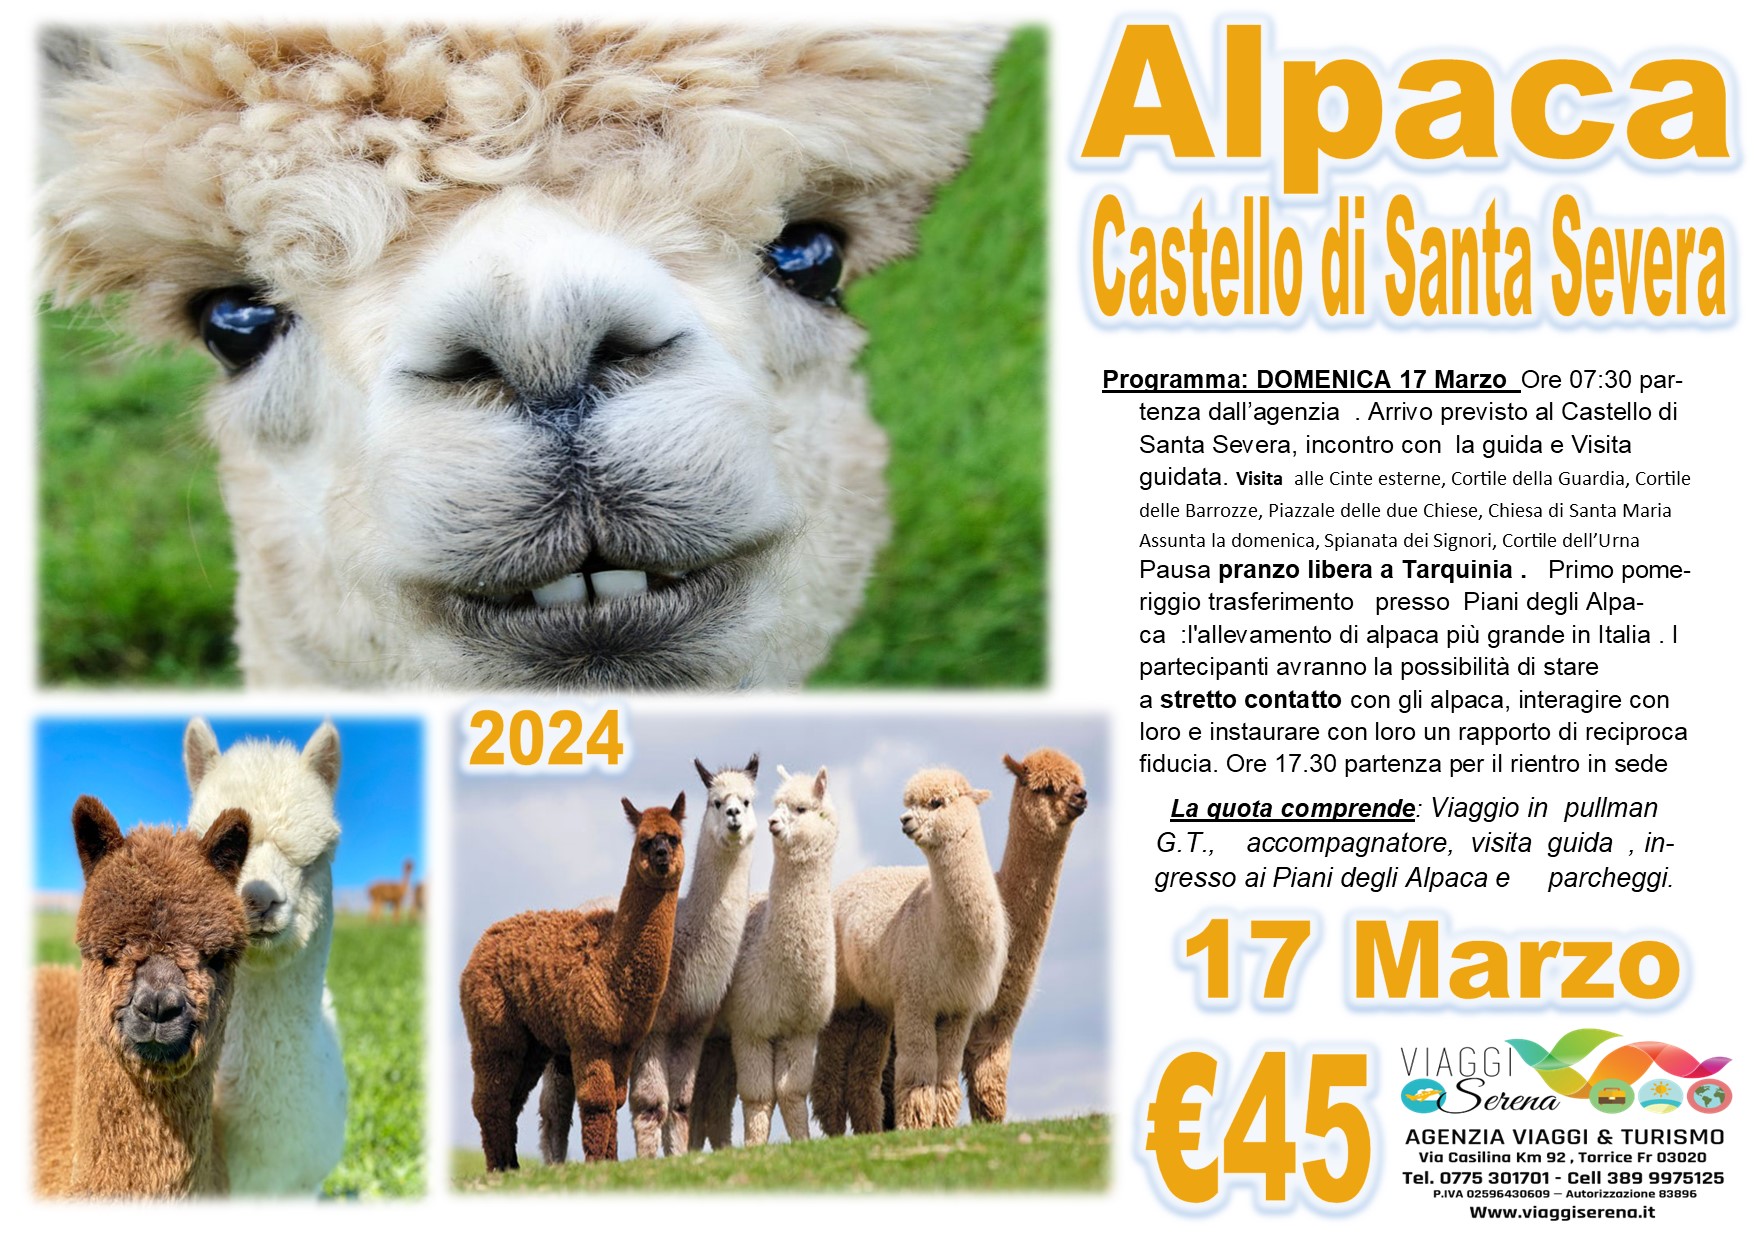 Viaggi di gruppo: Alpaca e Castello di Santa Severa 17 Marzo € 45,00